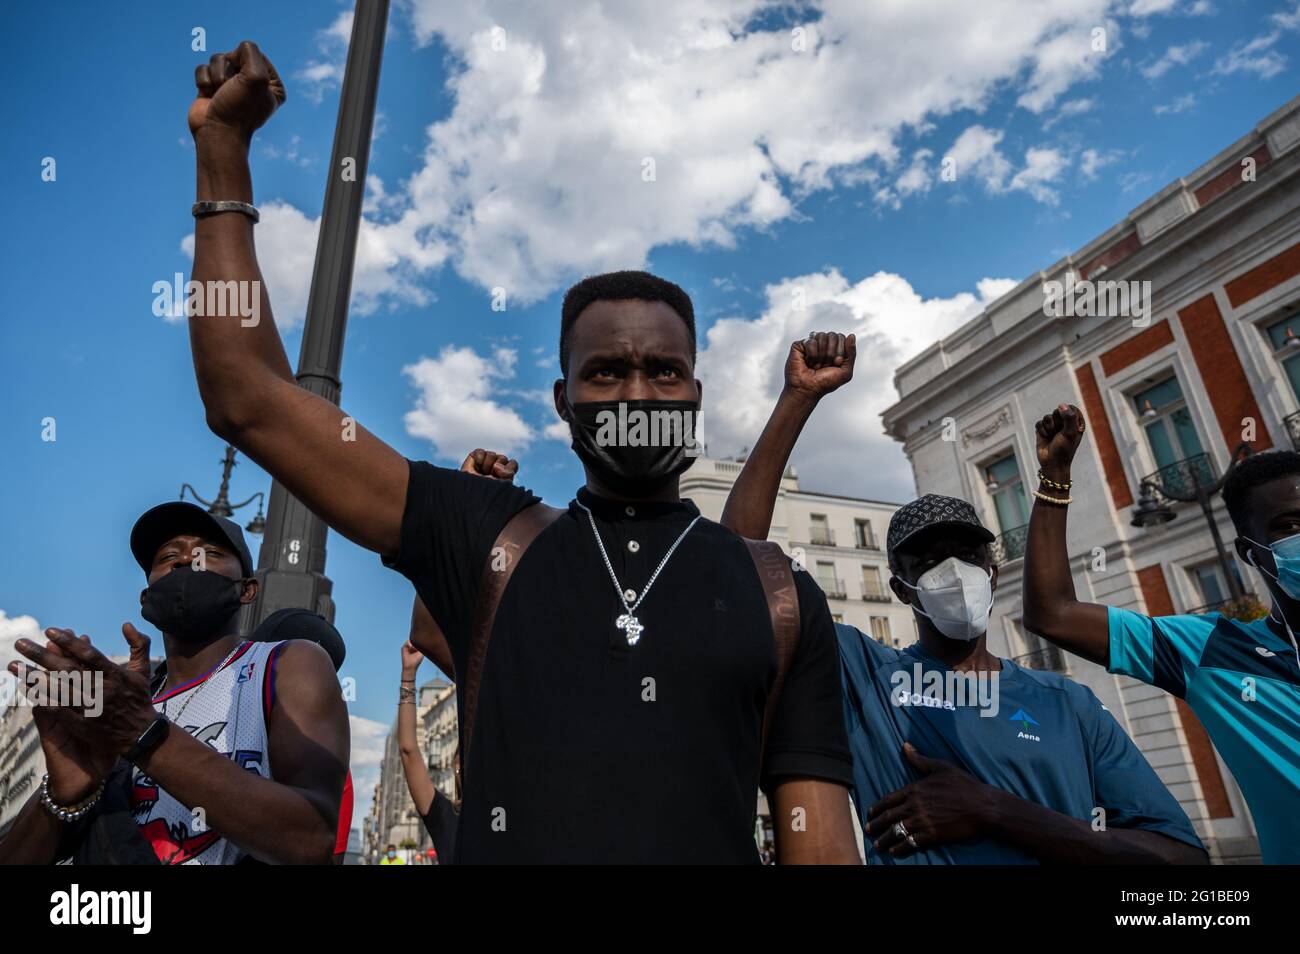 Madrid, Spanien. Juni 2021. Menschen erheben ihre Fäuste während eines Protestes gegen Rassismus als Teil der sozialen Bewegung Black Lives Matter im Zusammenhang mit dem Tod des afroamerikanischen Bürgers George Floyd in den Vereinigten Staaten. Quelle: Marcos del Mazo/Alamy Live News Stockfoto